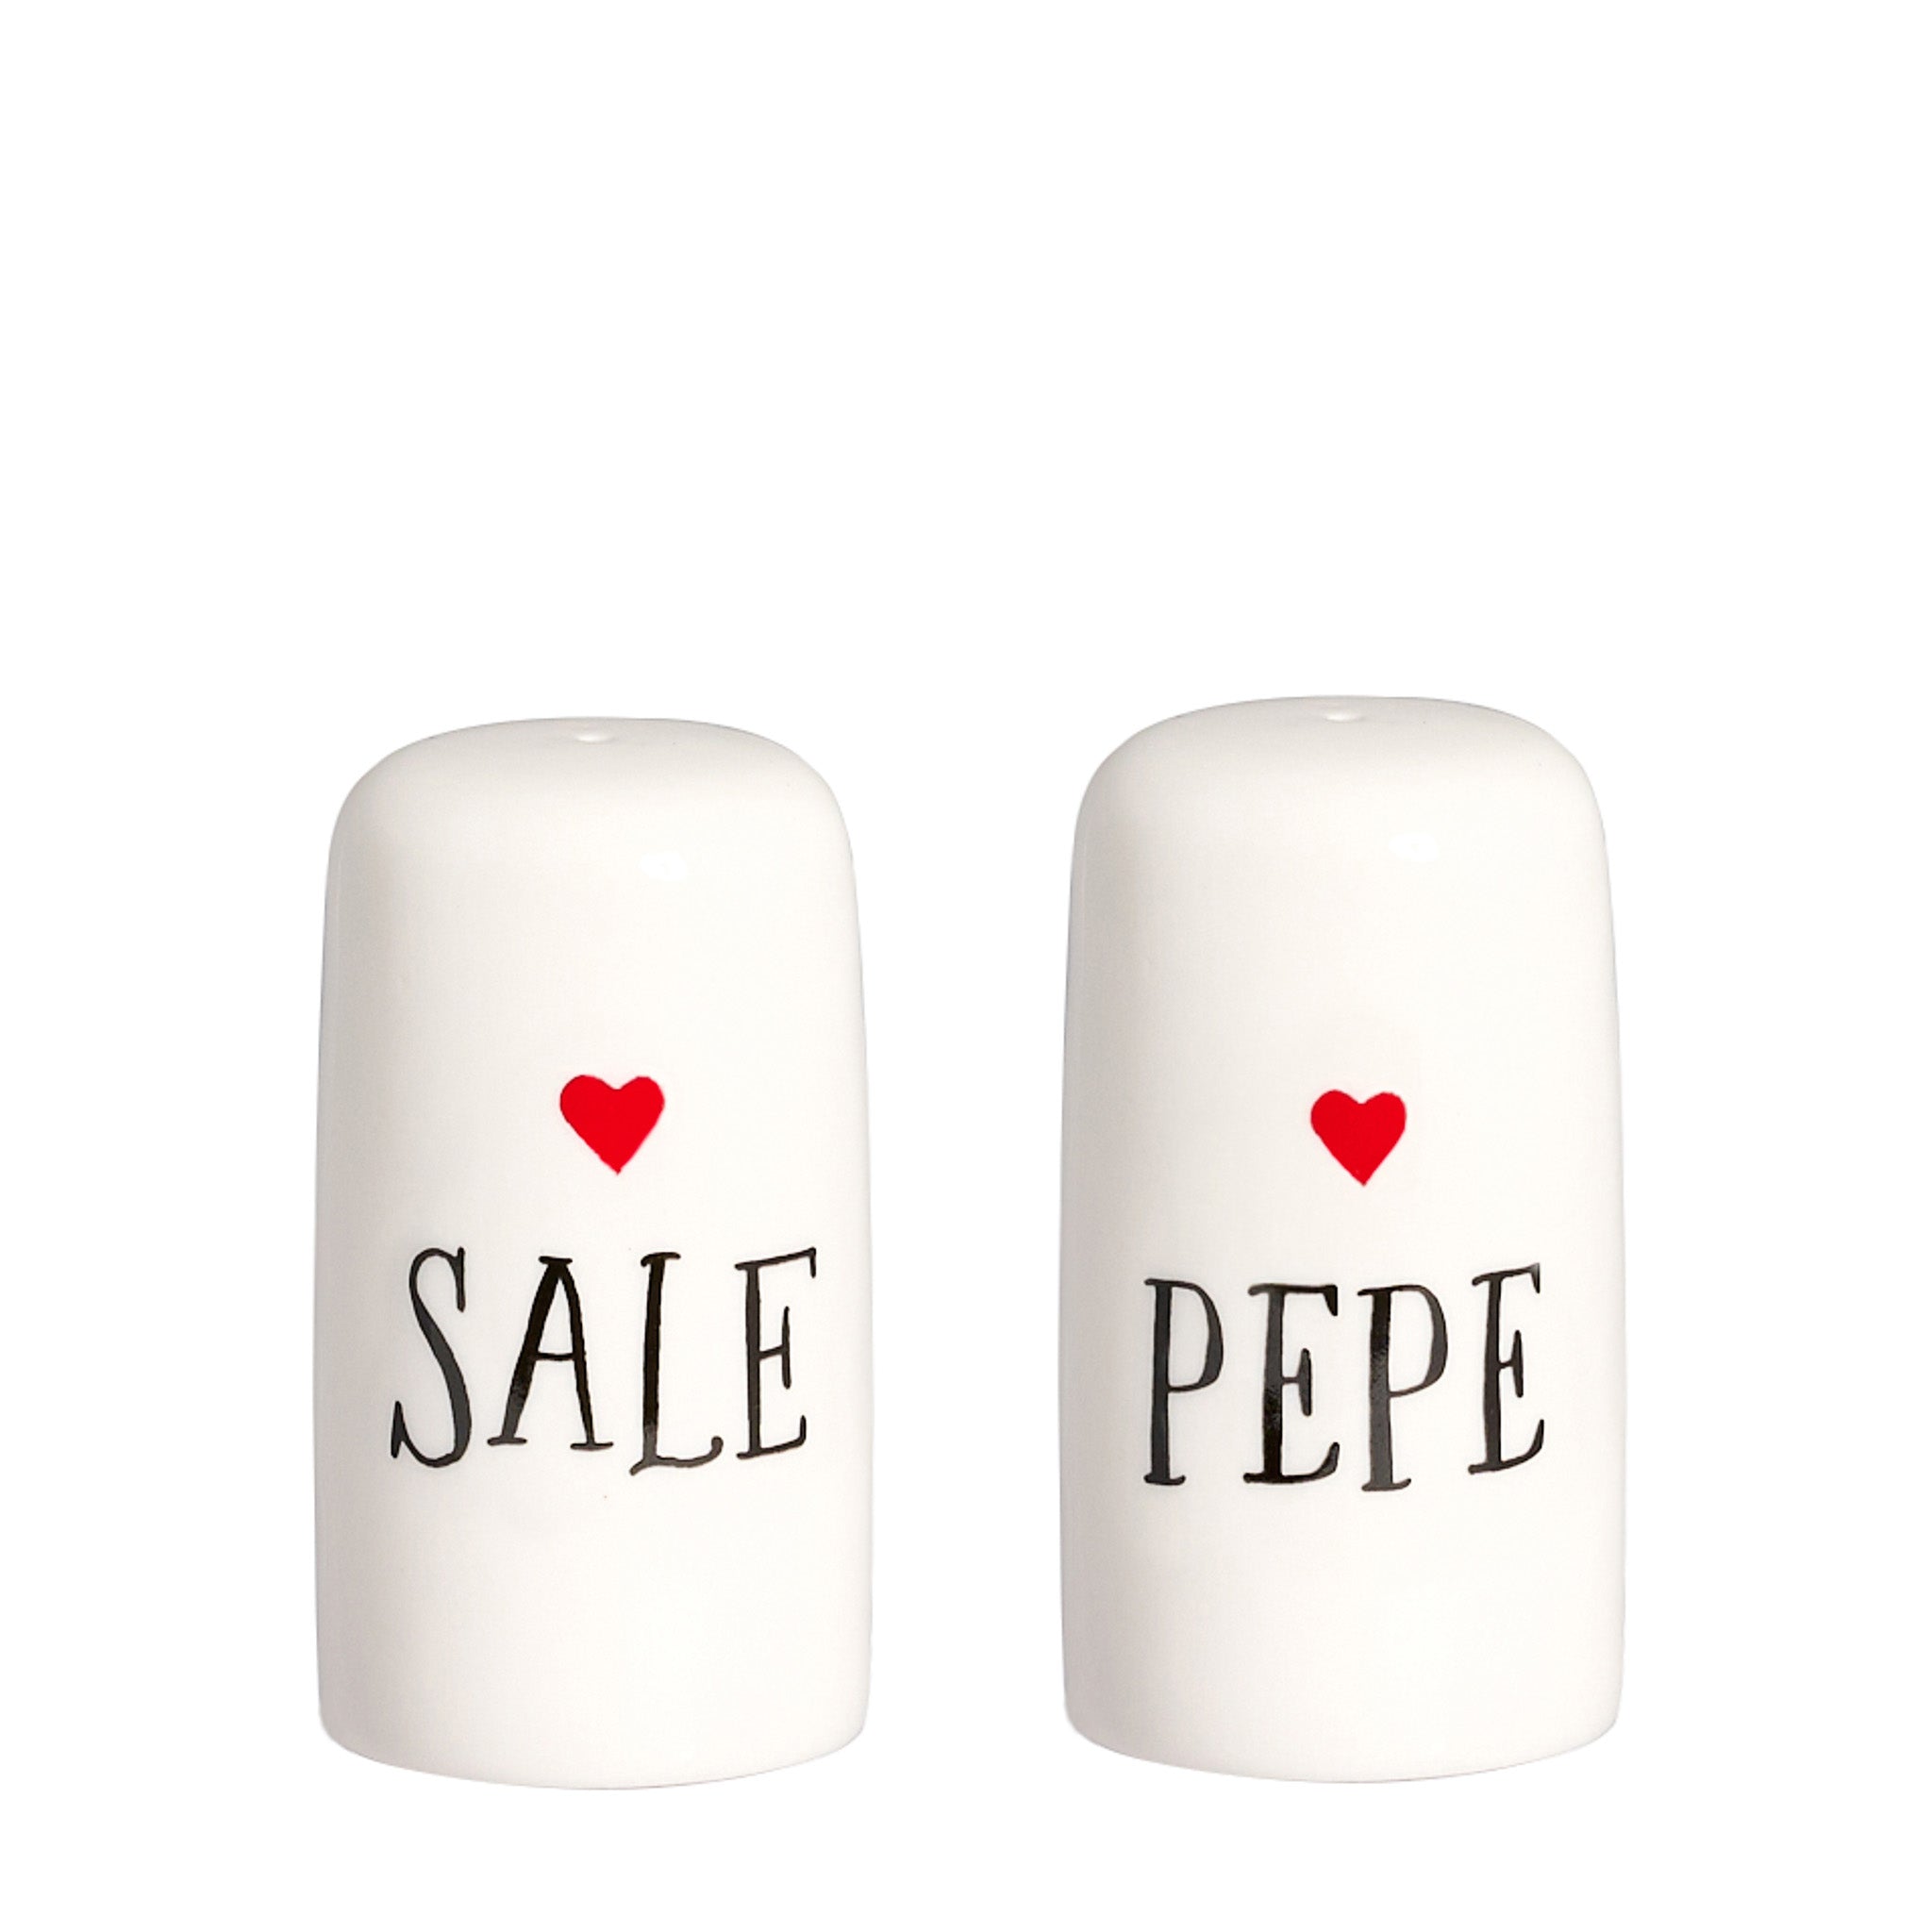 Set of salt and pepper "salt" - "pepper" with heart